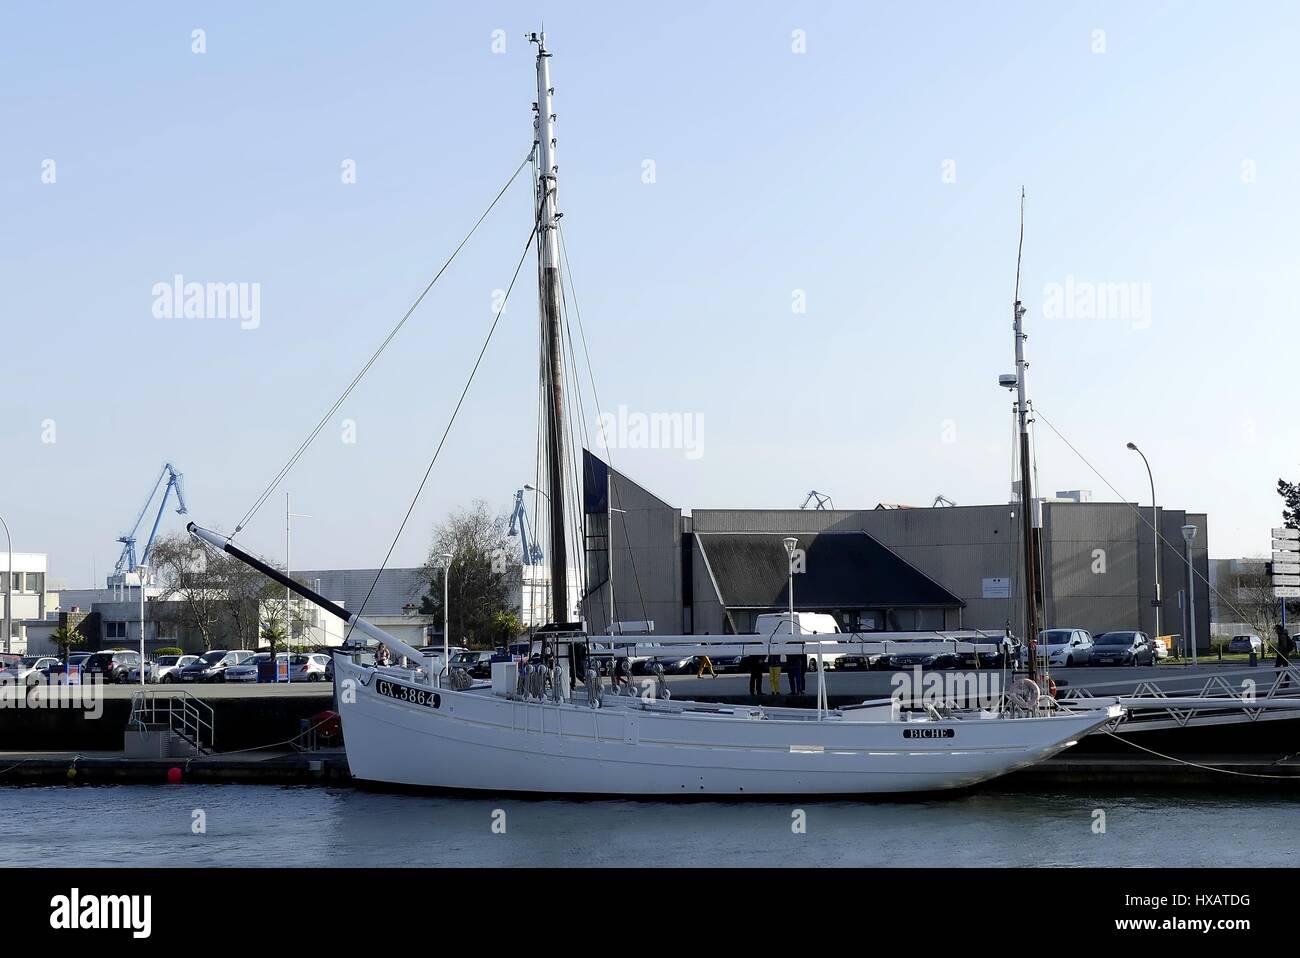 Lorient, France - 25 mars 2017 : le thon en bois ancien bateau à voile amarré dans le port de Lorient, France. Banque D'Images